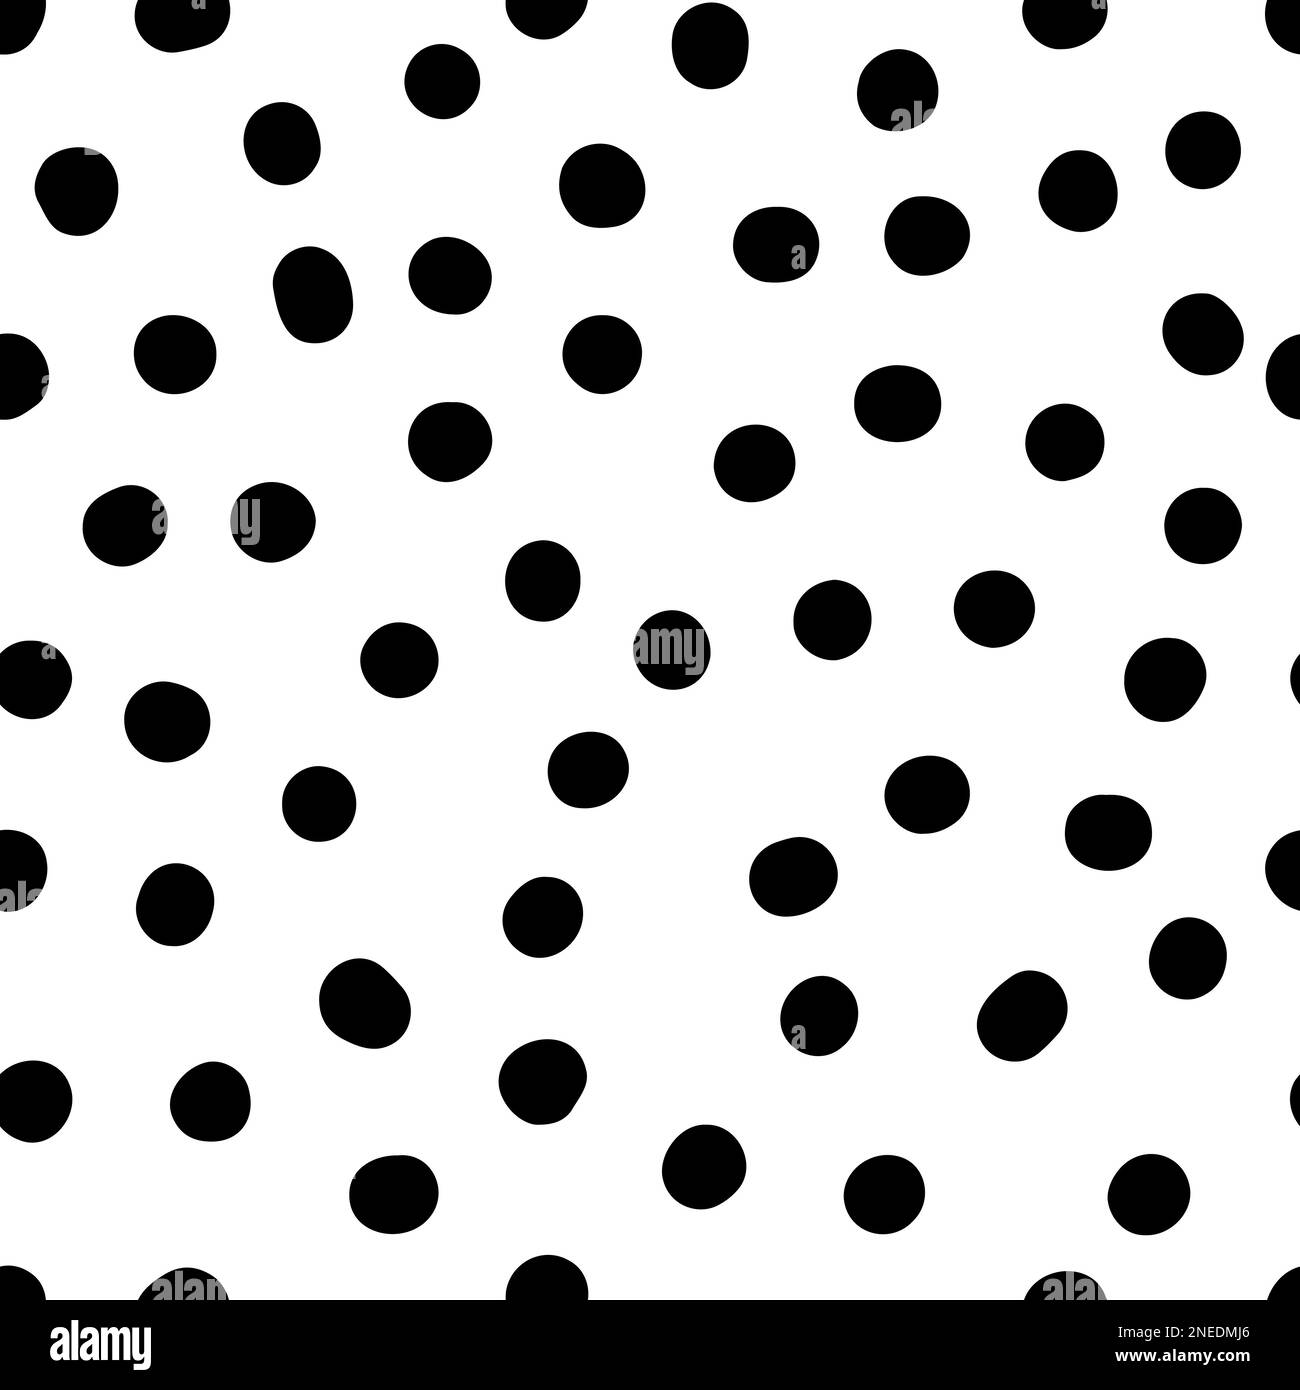 Nahtloses, neutrales Punktmuster. Schwarze handgezeichnete Kreise isoliert auf weißem Hintergrund. Abstraktes Random Points Ornament. Vektorgrafik für w Stock Vektor